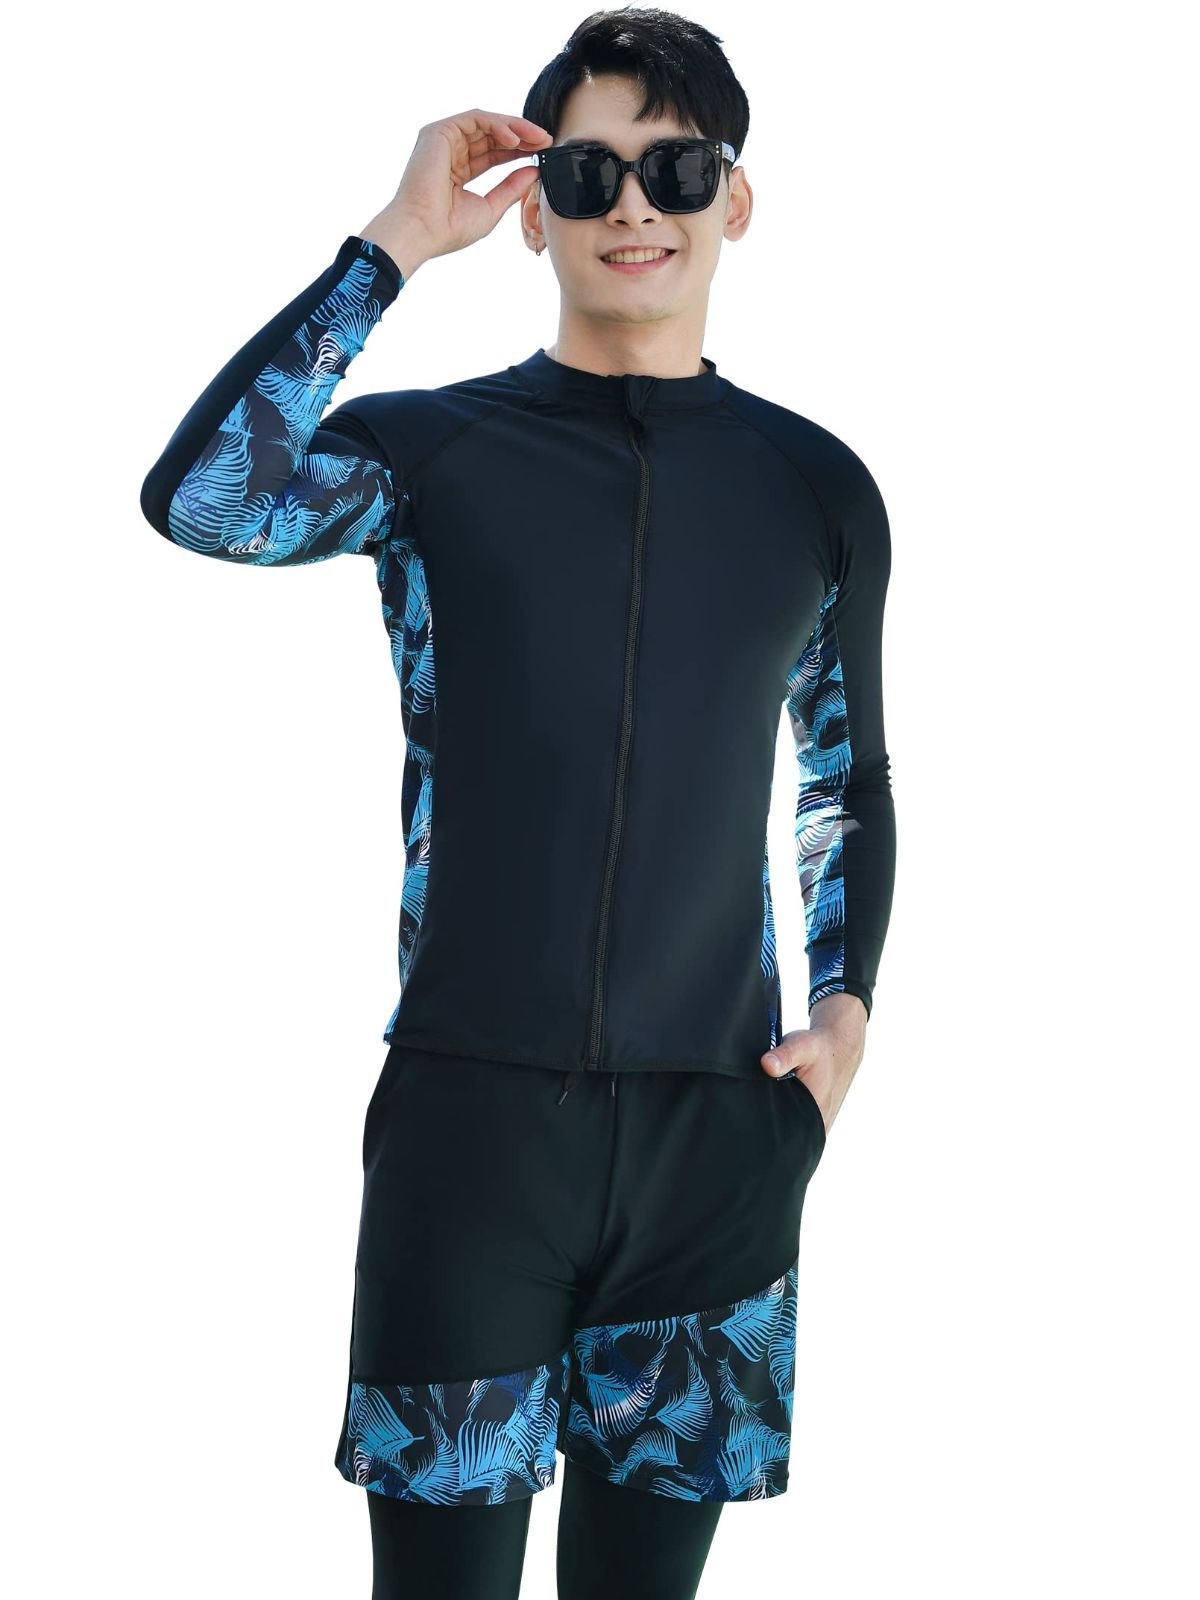 ZHPUAT 水着 メンズ ラッシュガード 上下 セット 長袖 レギンス サーフパンツ フィットネス 男性 温泉 ビーチ 水泳 スイミング UVカット  吸汗 速乾 メルカリShops